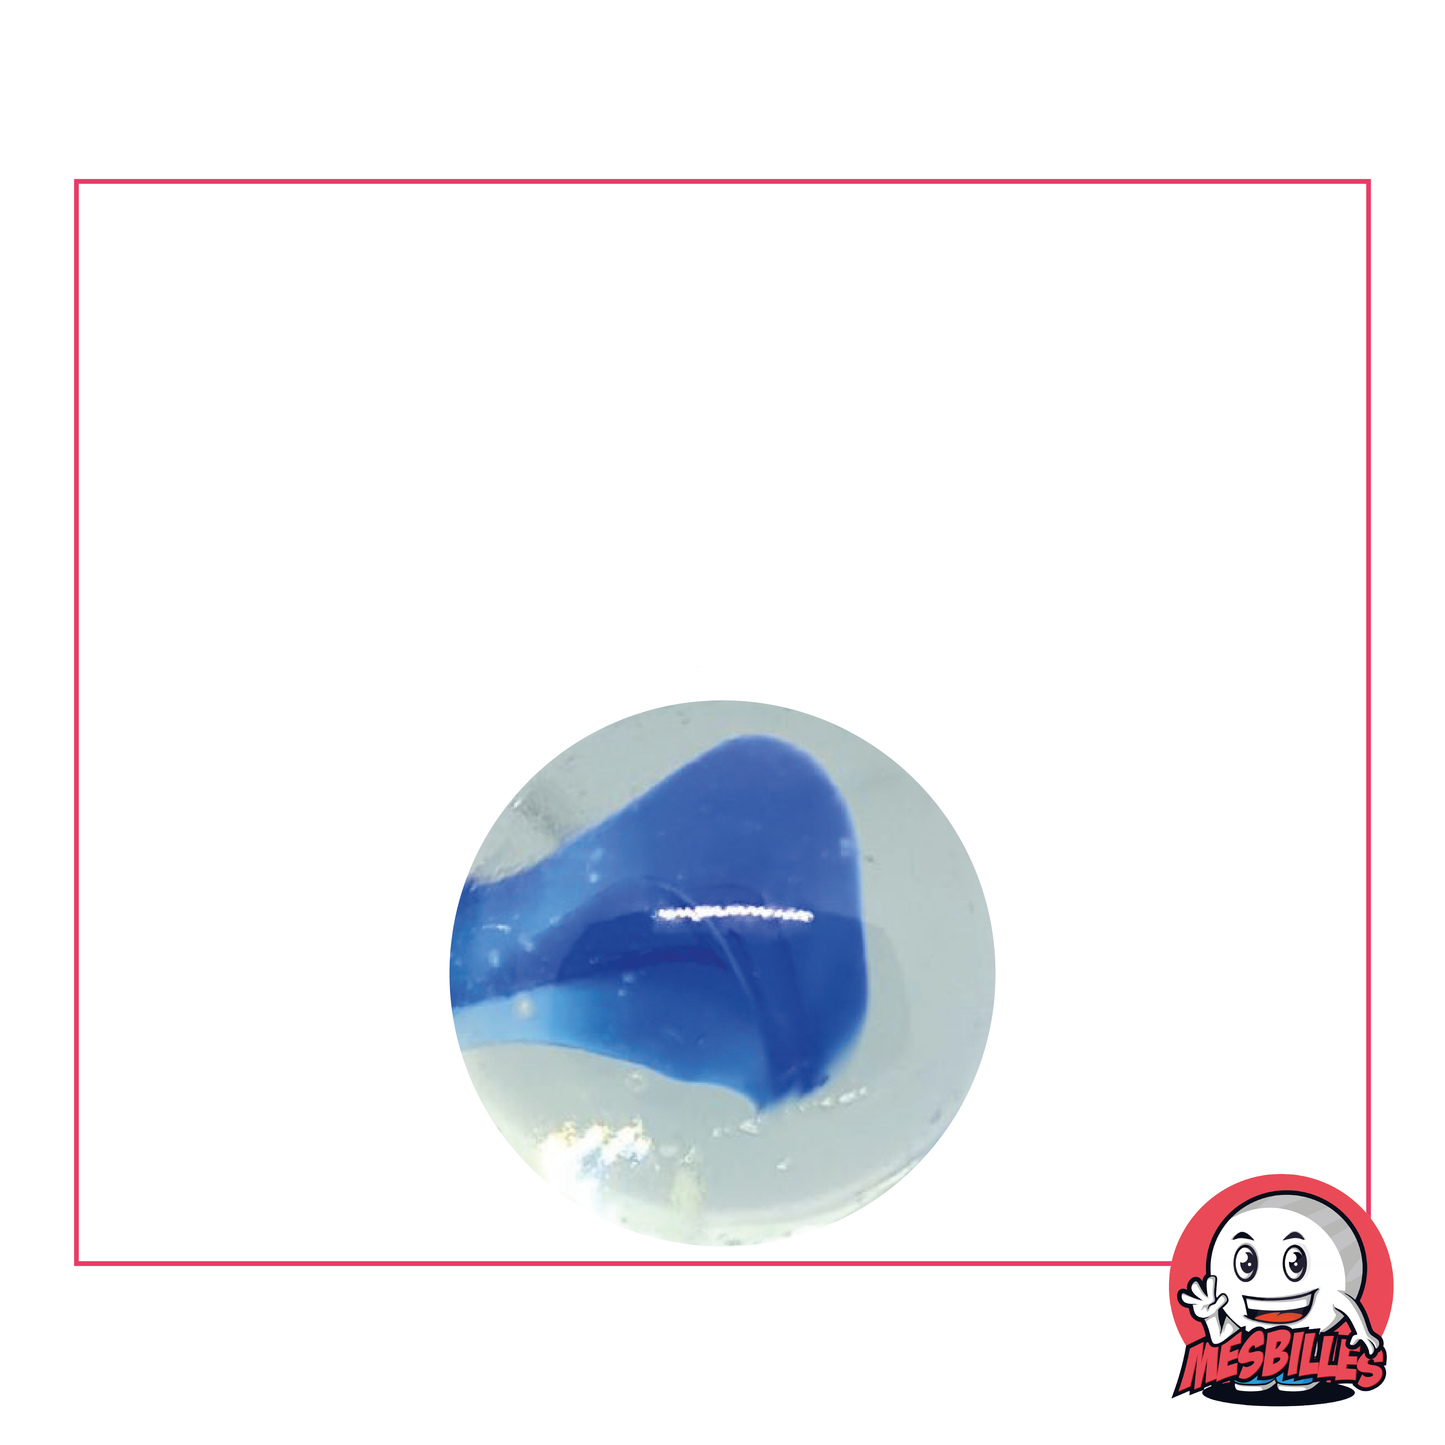 Bille Ours Blanc de 16 mm, bille ronde en verre translucide couleur cristal au coeur bleu